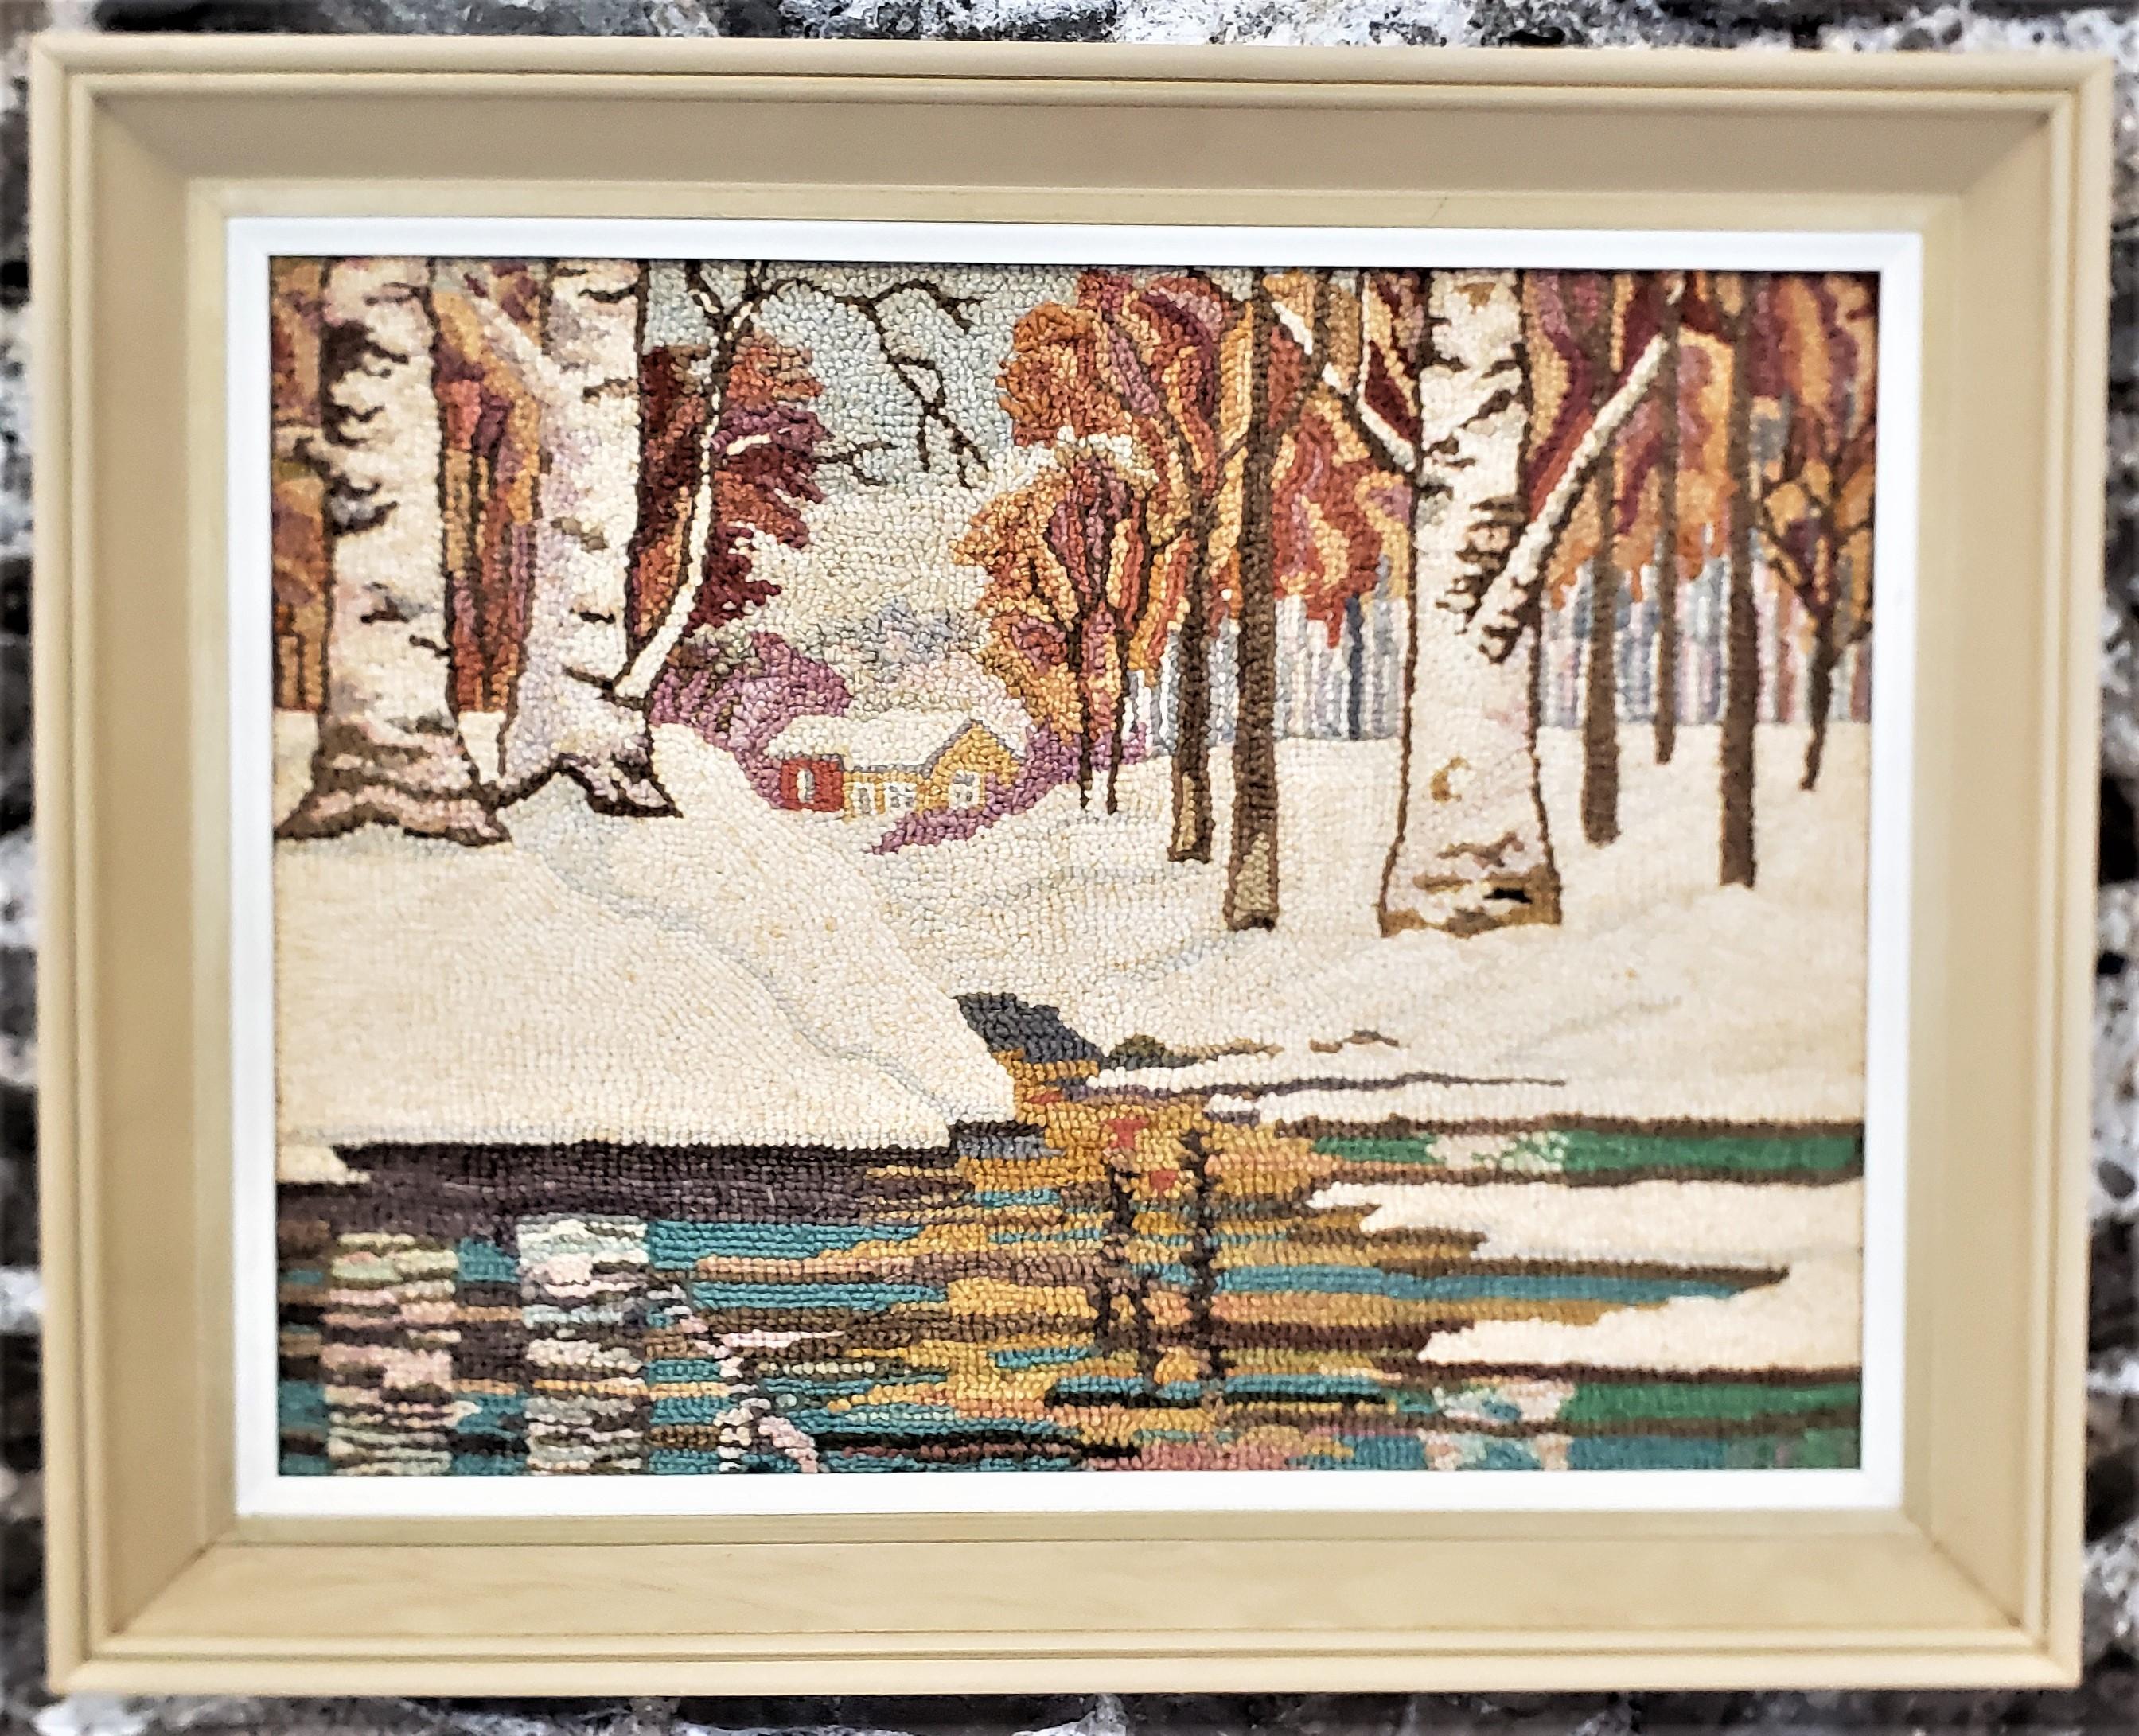 Ce tapis crocheté encadré a été réalisé par le célèbre George Edouard Tremblay du Québec (Canada) vers 1940 dans le style Folk Art de l'époque. Le tapis ou la natte est fait de laine sur de la toile de jute qui a été montée sur une planche de